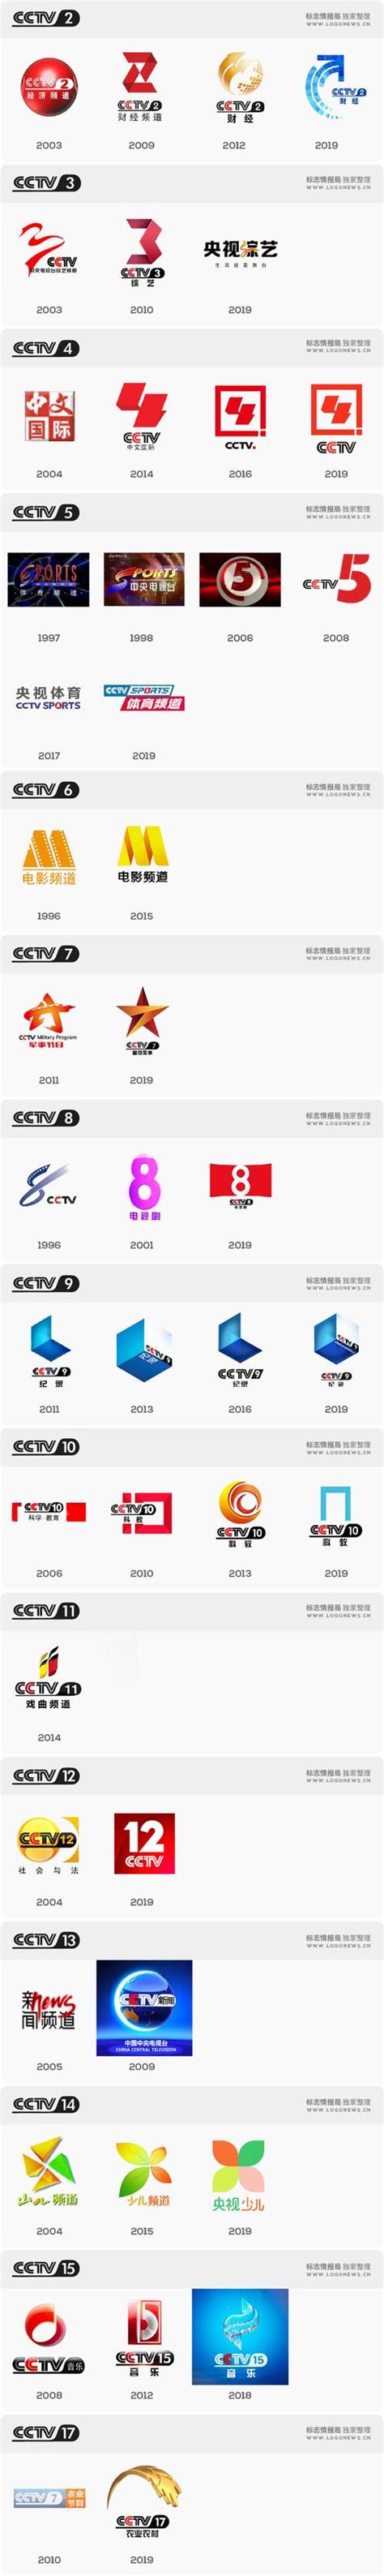 2022年CCTV-8电视剧频道全天广告插口刊例价格表 | 九州鸿鹏